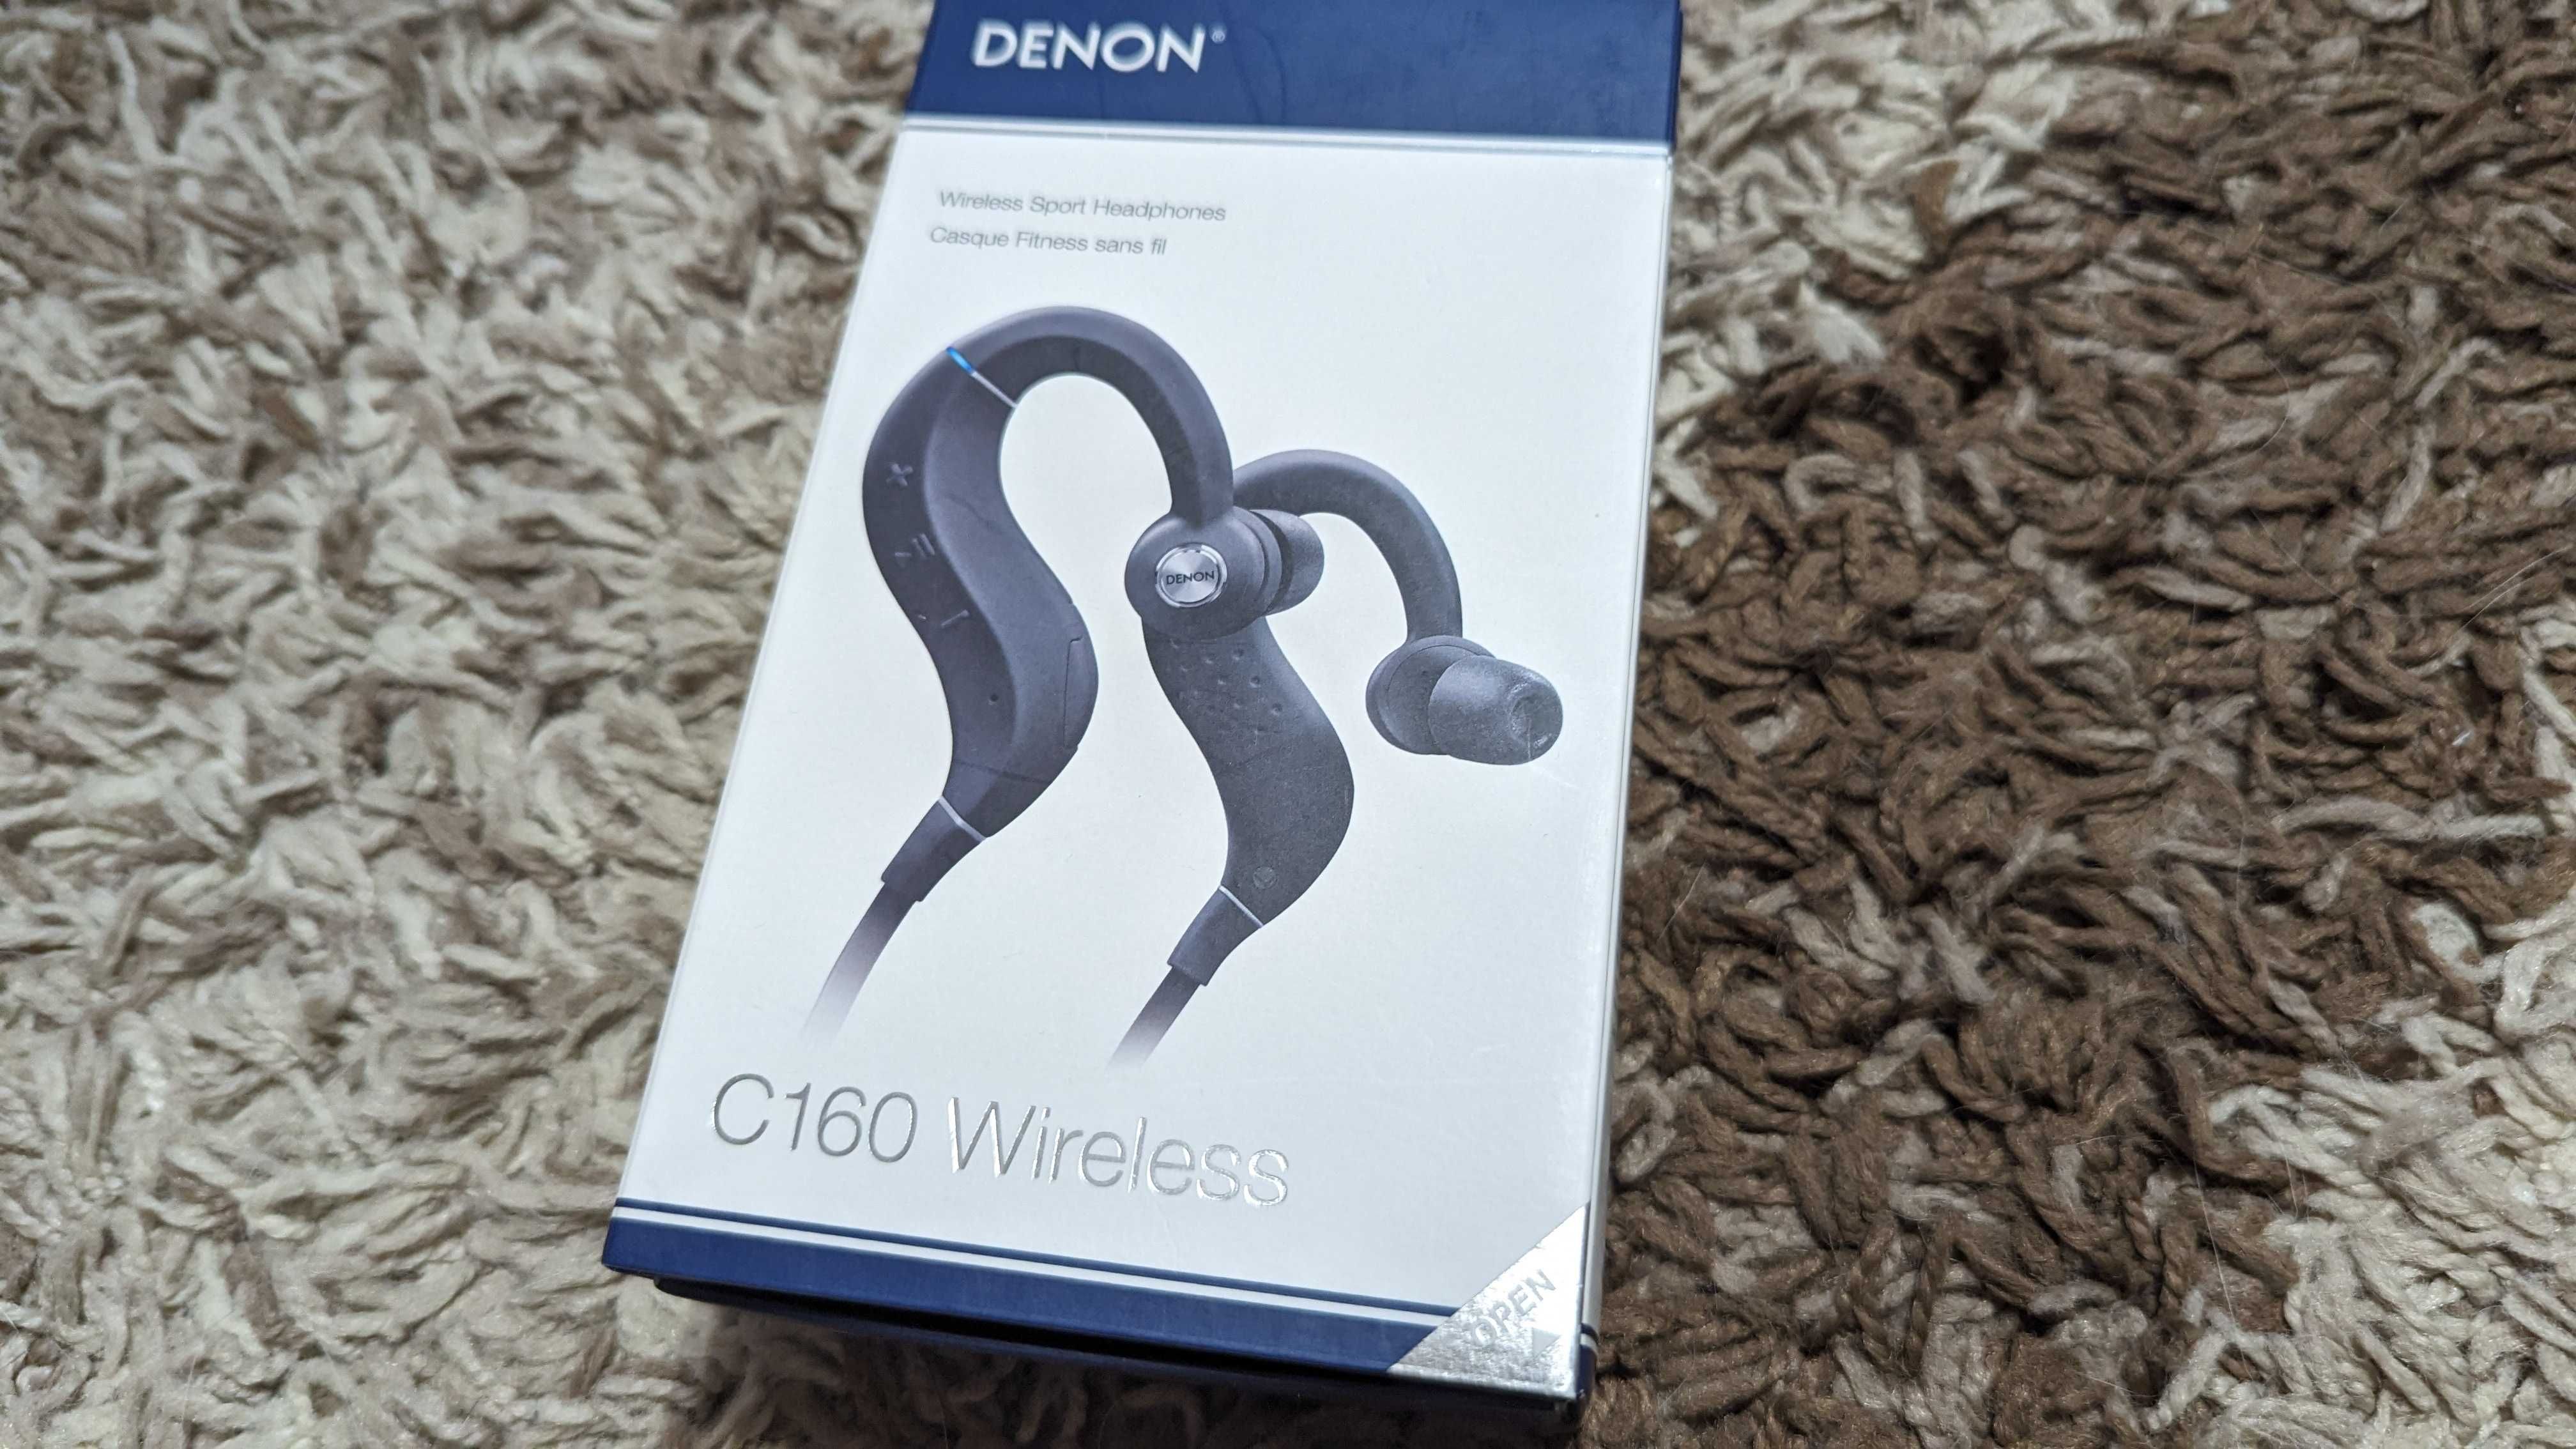 Denon c160 Wireless  Бездротові навушники Спортивні   преміум якість